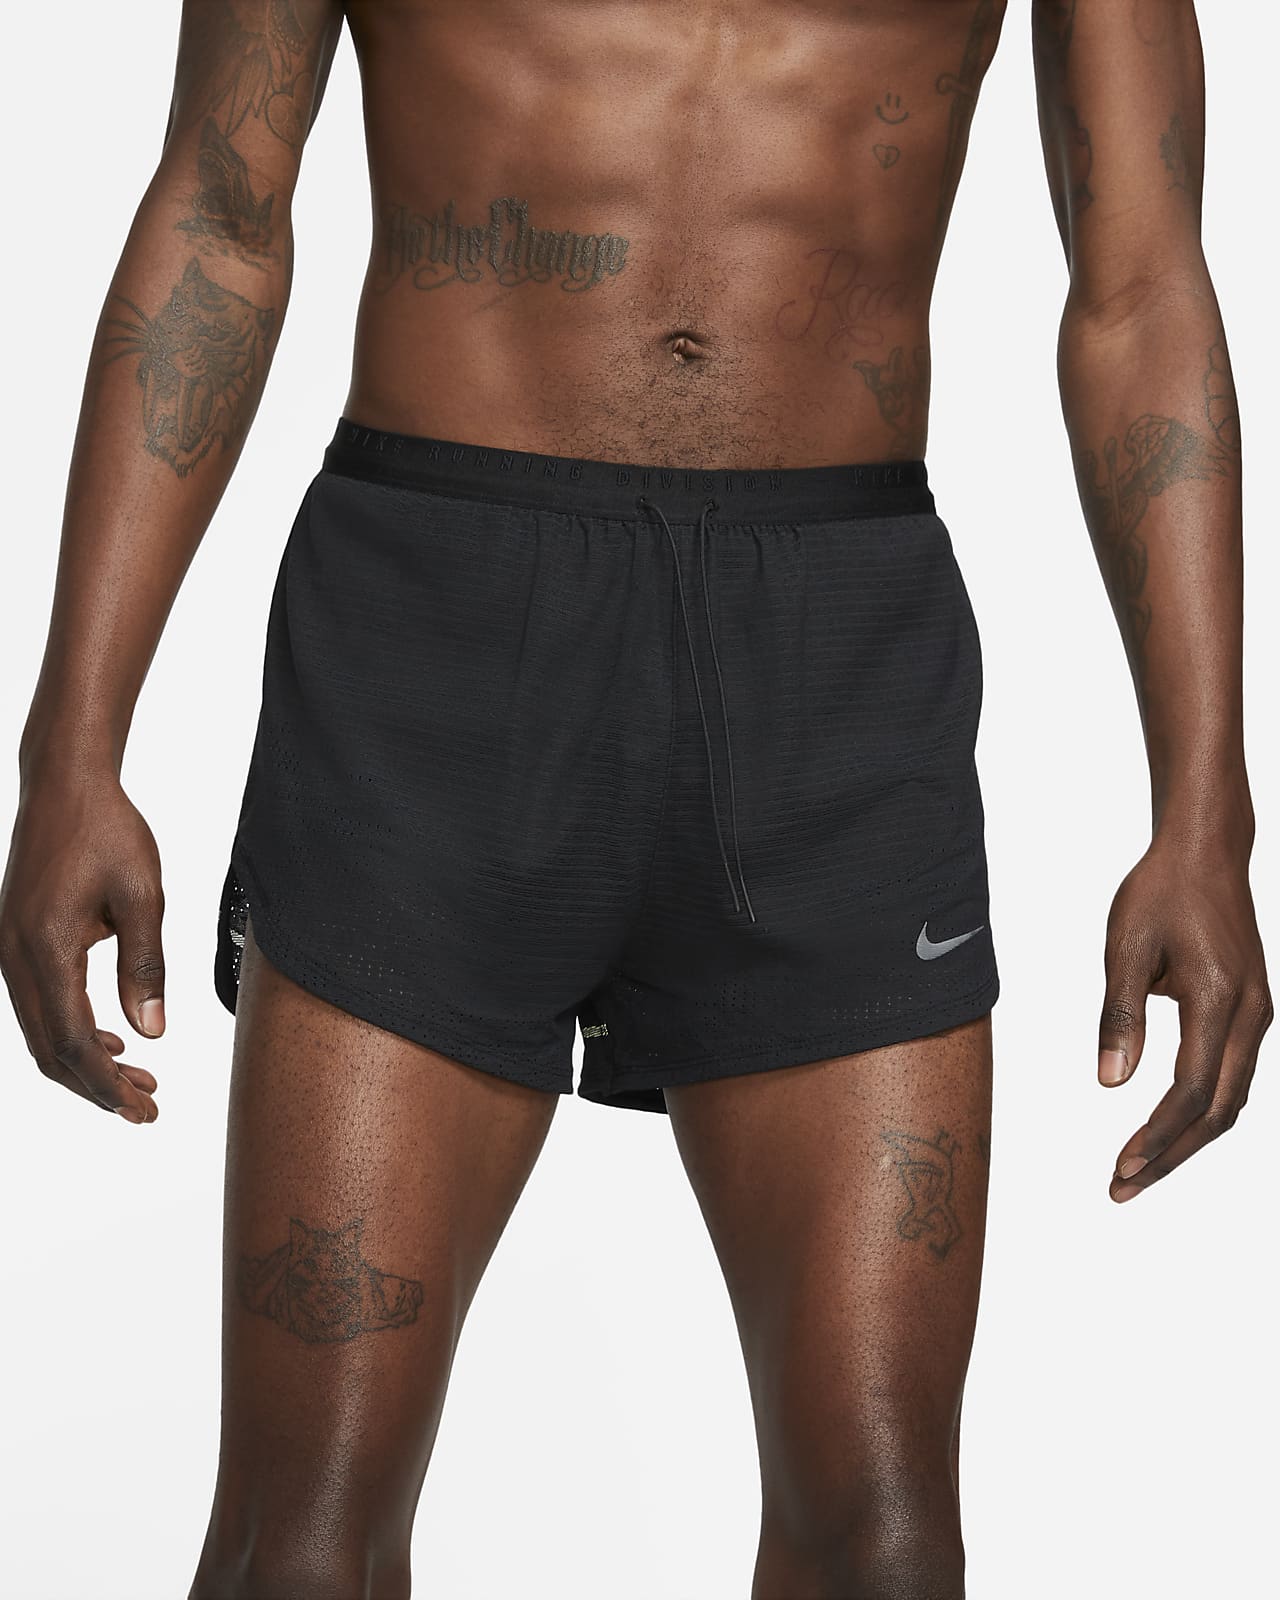 telegram sagtmodighed Kedelig Nike Dri-FIT Run Division Pinnacle Men's Running Shorts. Nike.com